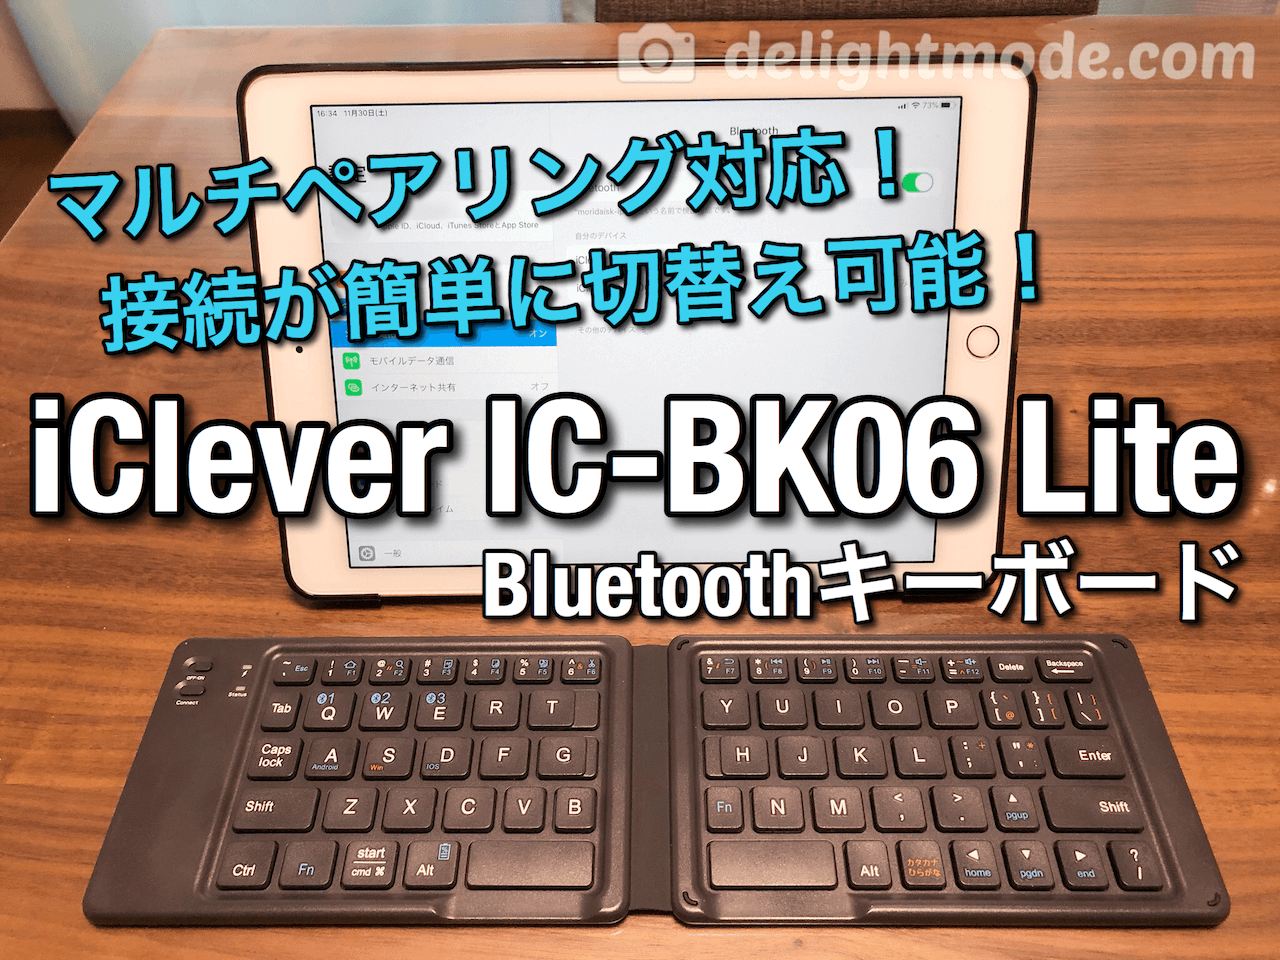 マルチペアリング対応！Bluetoothキーボード 「iClever IC-BK06 Lite」レビュー！iPhoneやiPadとの接続が簡単に切替え可能！２つ折りに畳めてモバイル利用に便利！  | ディライトモード DelightMode